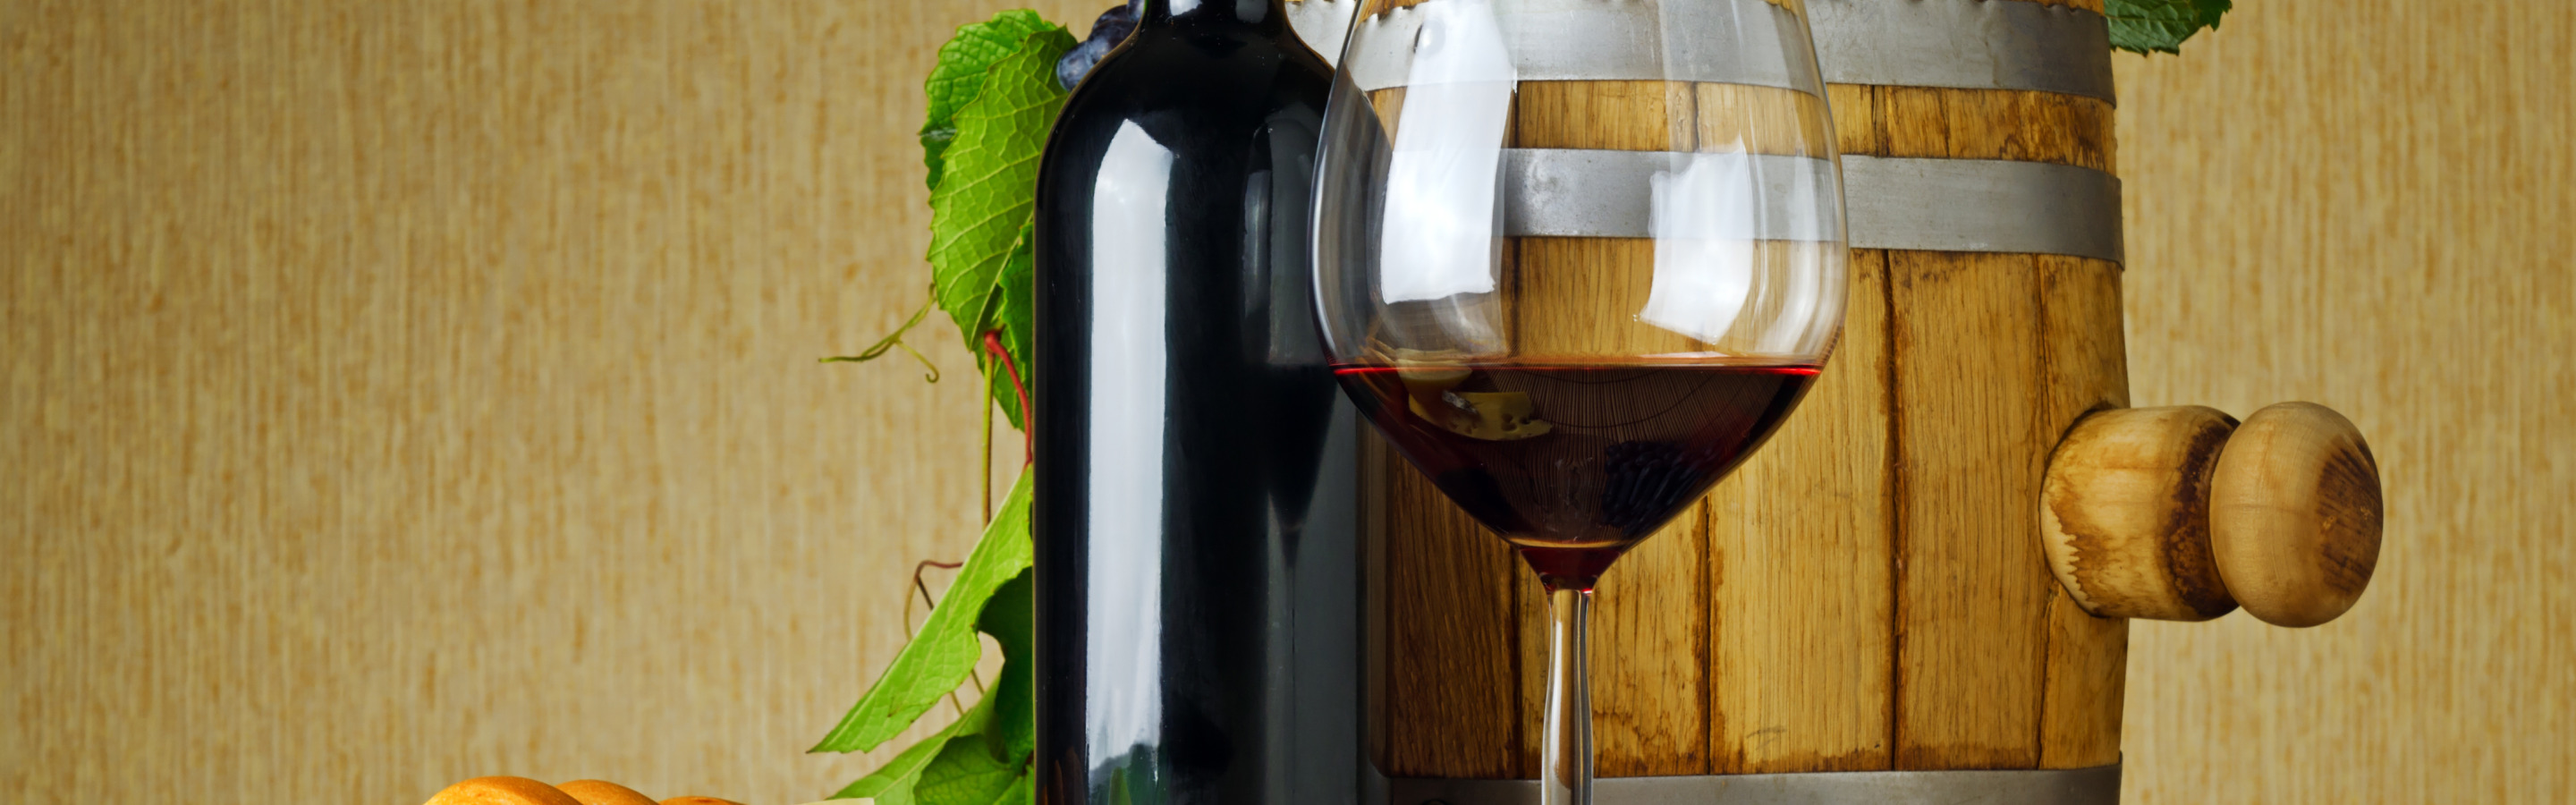 Фото бутылки вина на столе. Фон для фотошопа с бочкой вина и столом. Вино единица. Rice алкоголь.